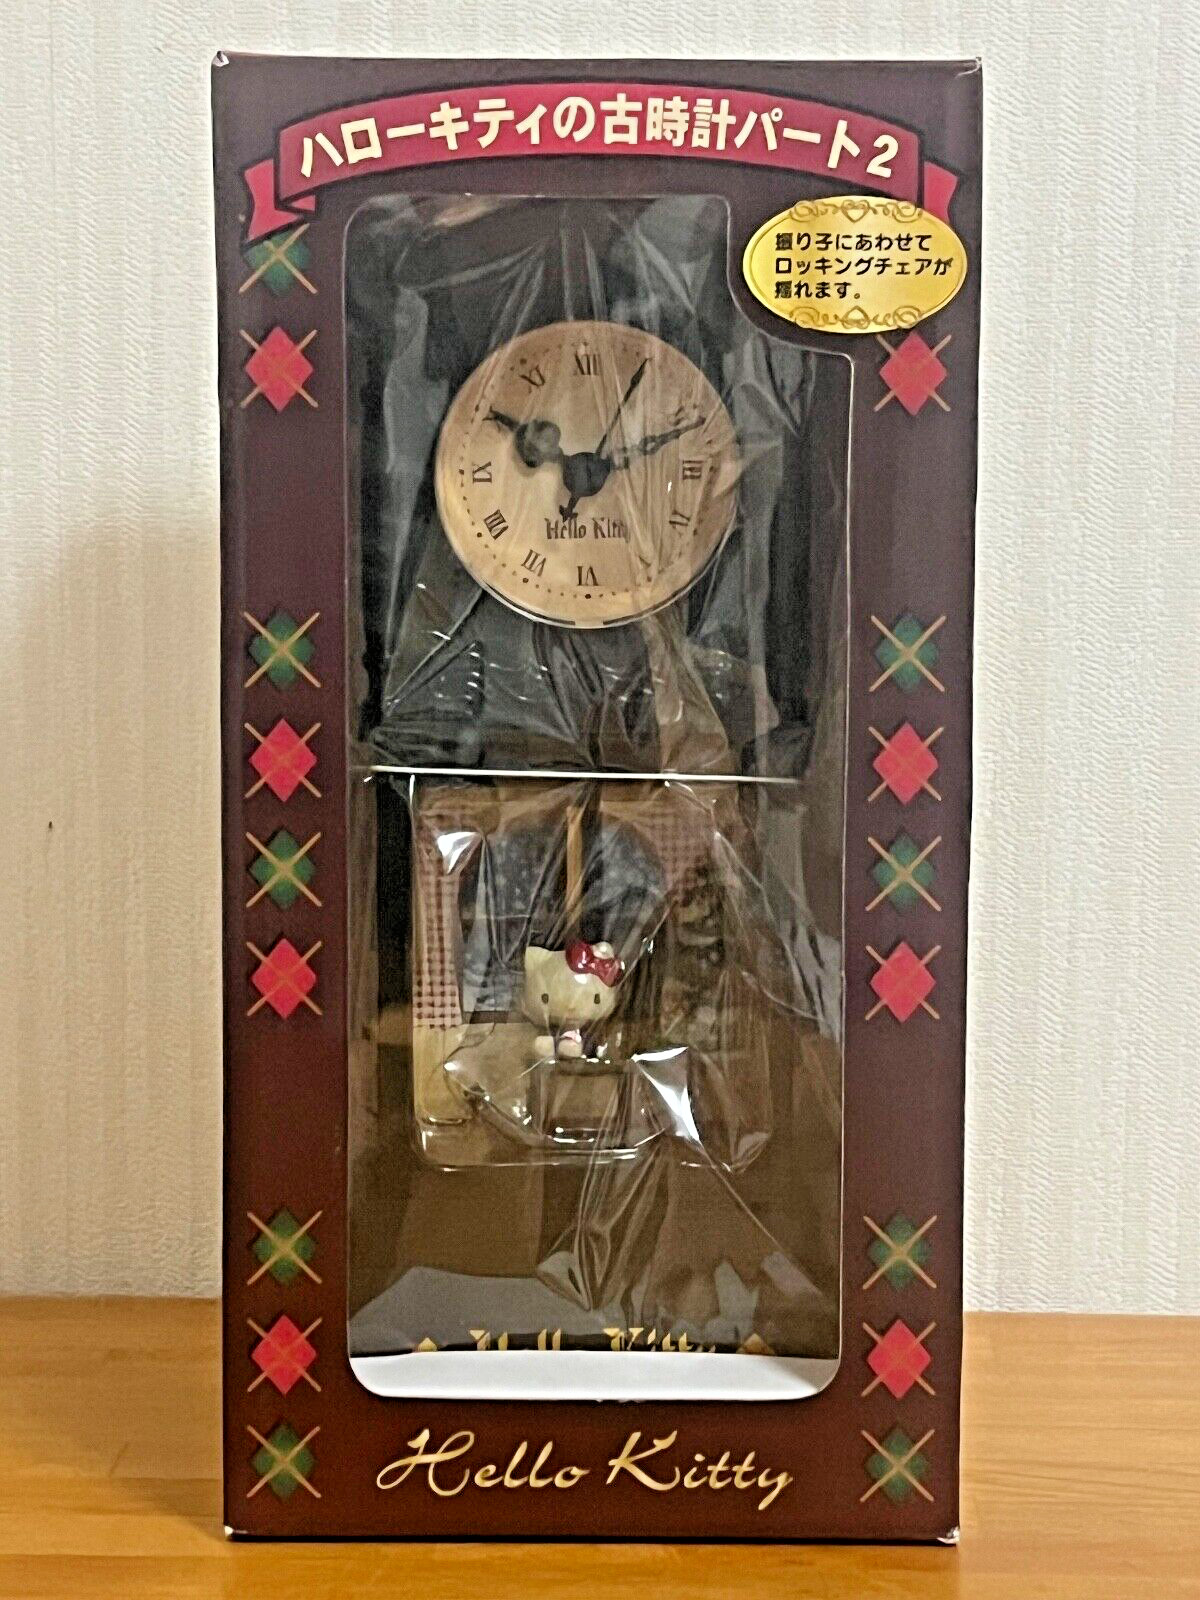 Vintage Sanrio Hello Kitty Retro Clock Part 2 Rare 2006 EIKOH Japan